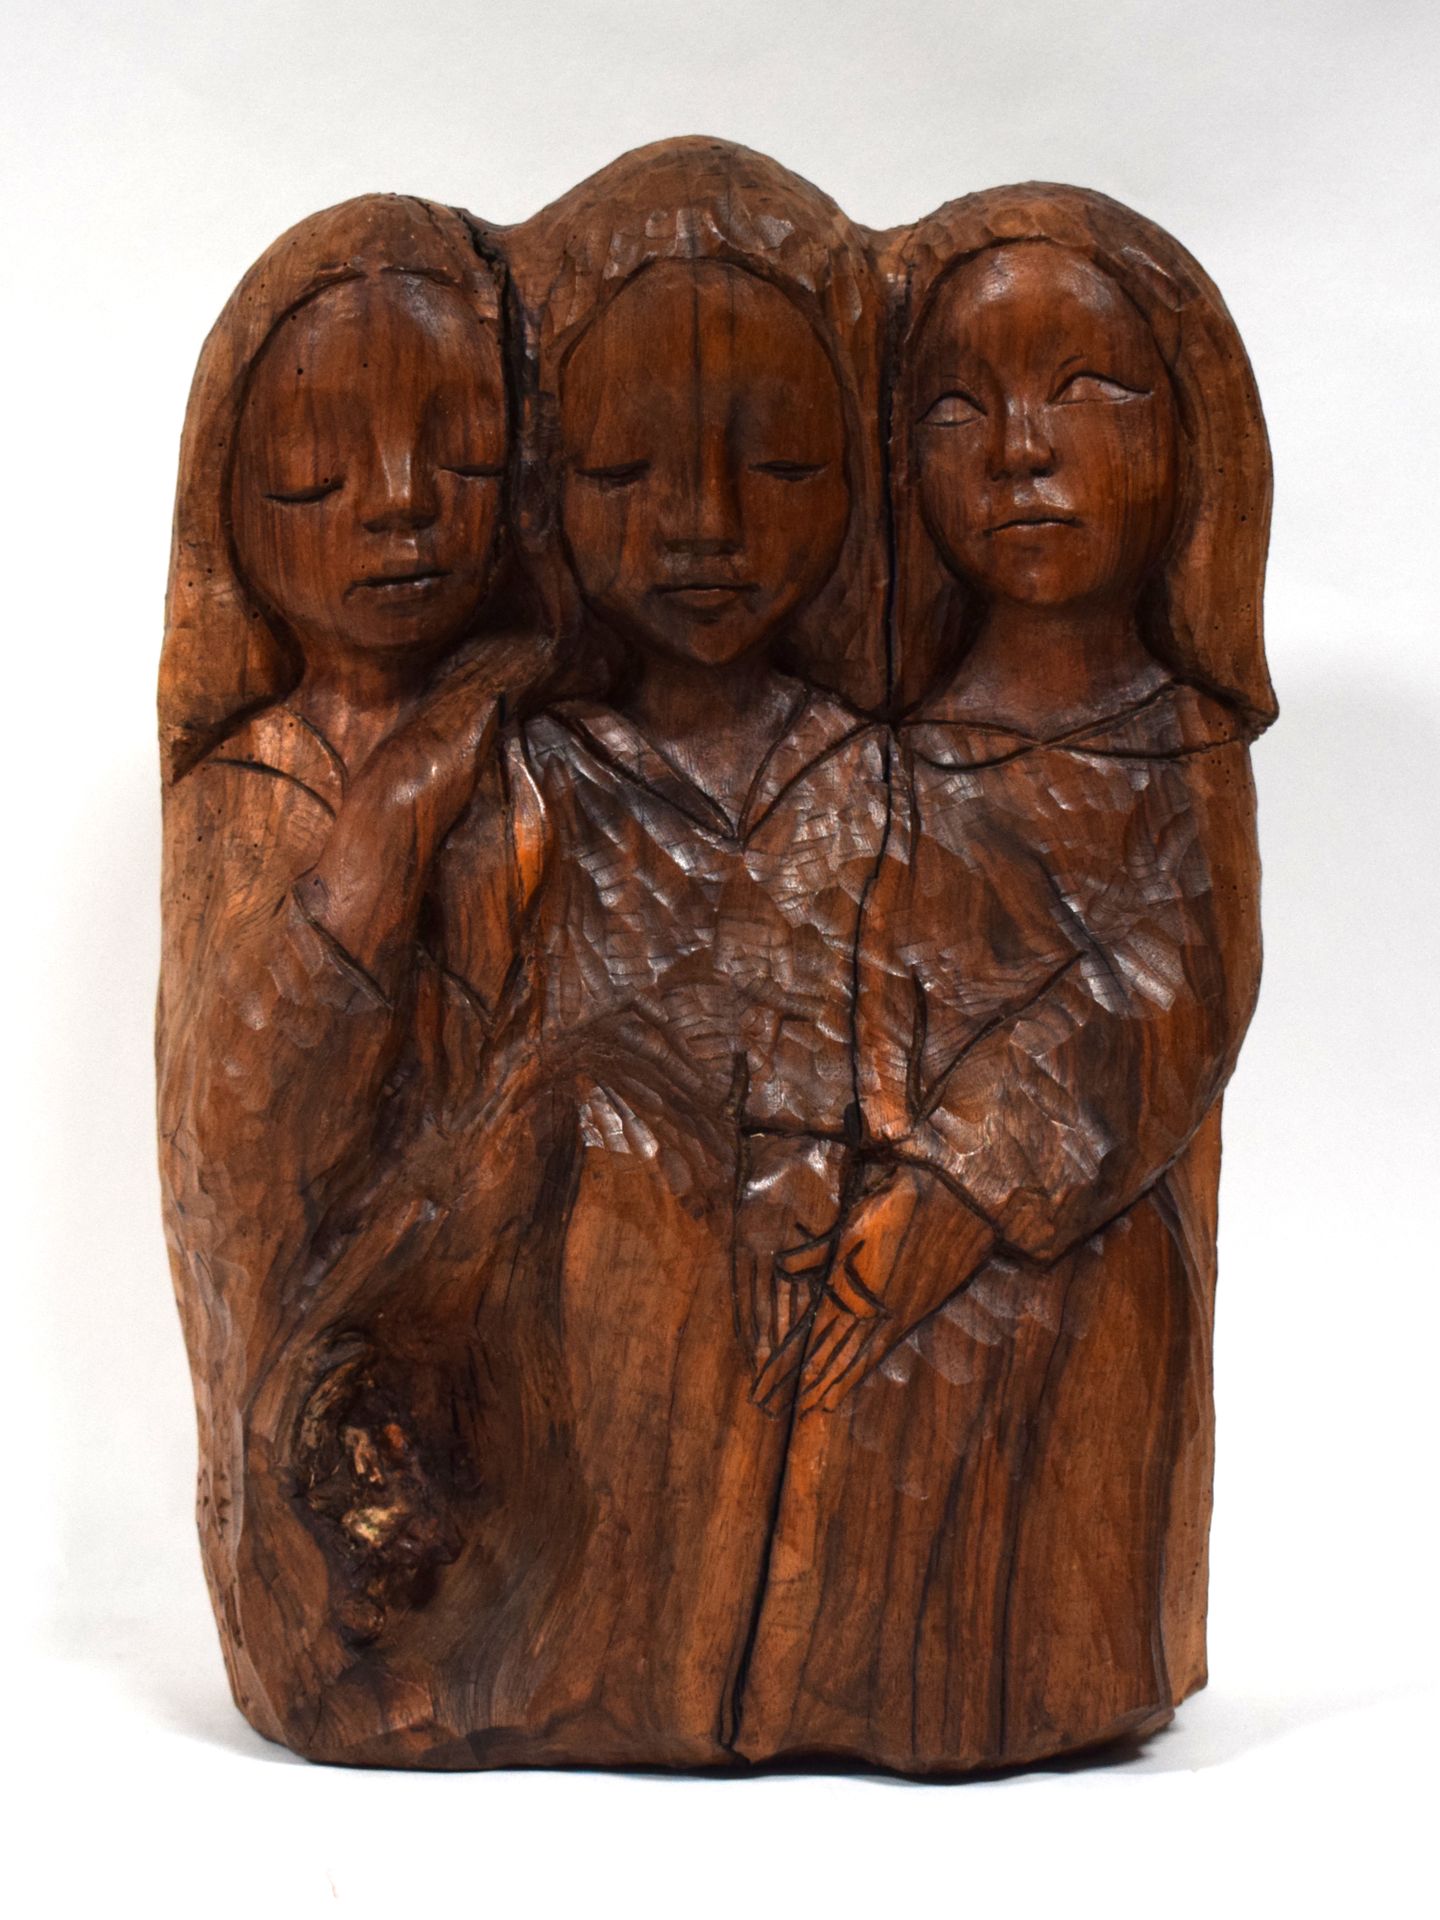 Null Hervé VERHNES (1933), 3 enfants, sculpture en bois, hauteur 42 cm

|

Hervé&hellip;